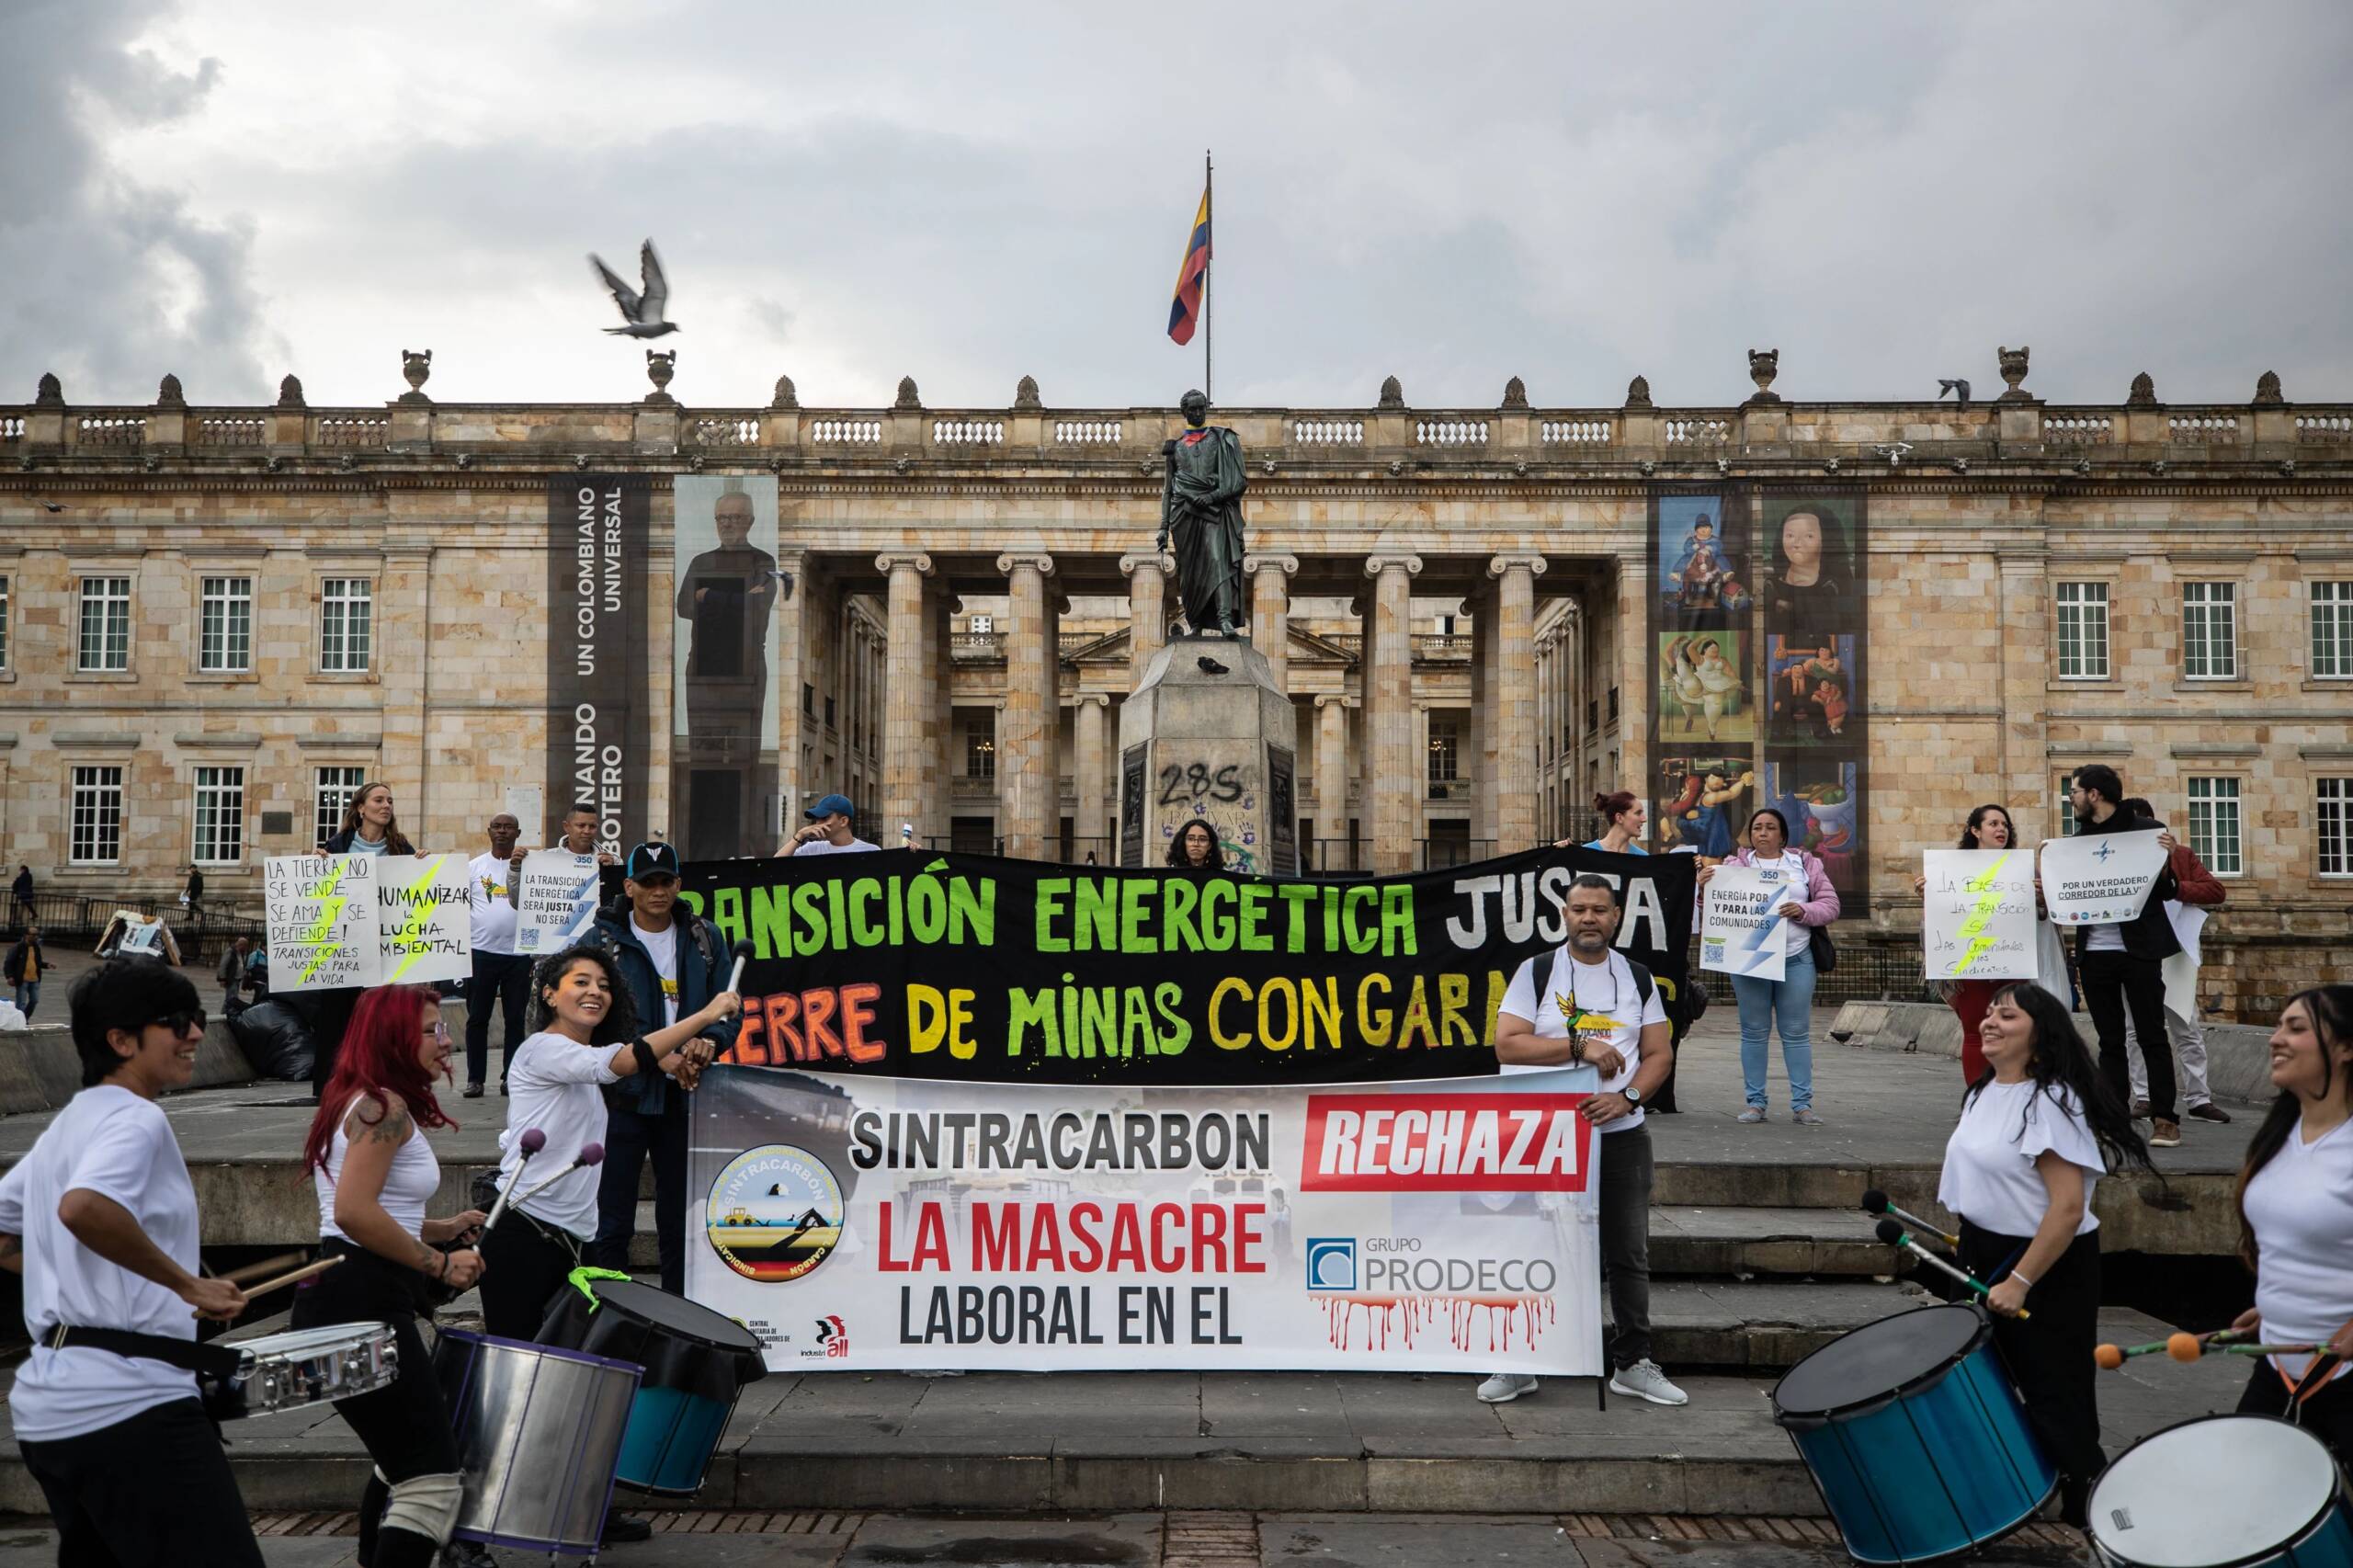 Bogotá, Colômbia, 3 de novembro: comunidades participam de audiências públicas e realizam um protesto na Plaza de Bolívar para pedir o fechamento das minas de carvão a céu aberto da Glencore e uma transição energética justa para todos. Foto: Iván Valencia